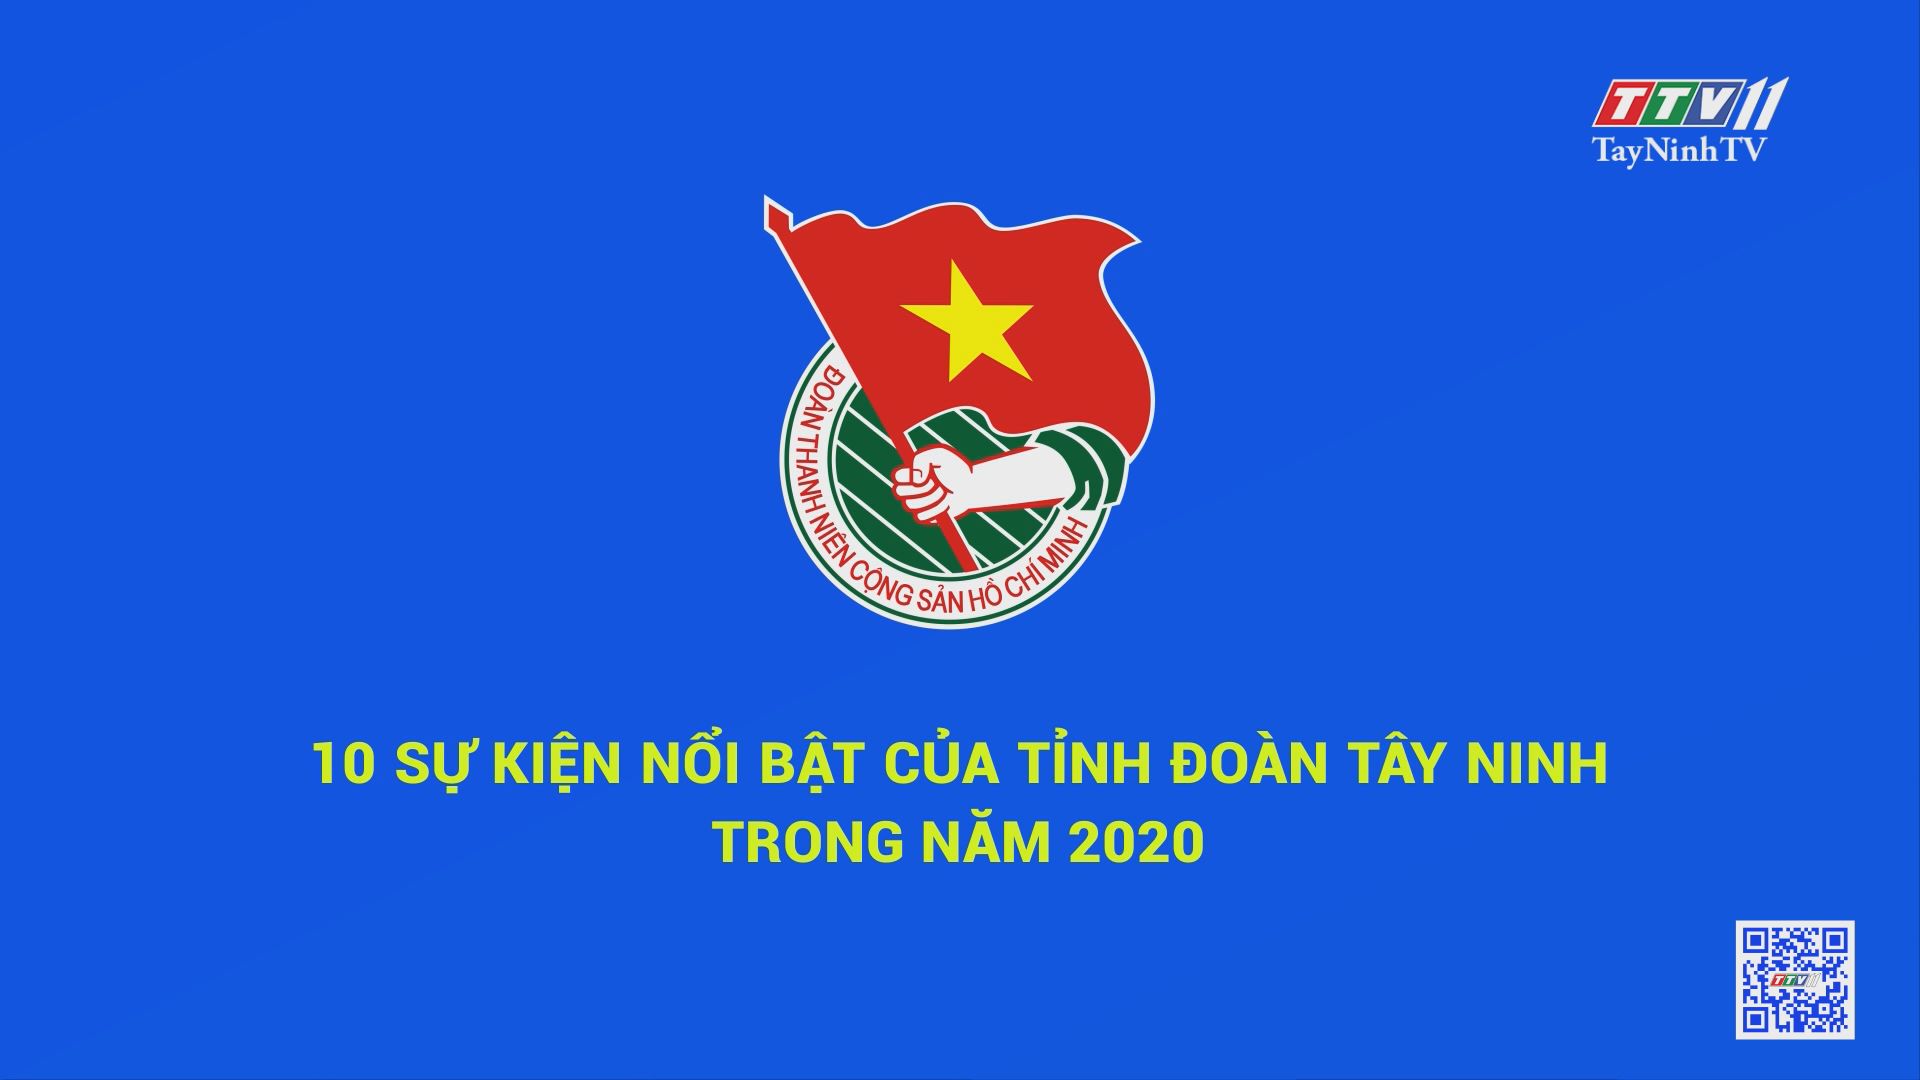 10 sự kiện nổi bật của tỉnh Đoàn Tây Ninh trong năm 2020 | THANH NIÊN | TayNinhTV